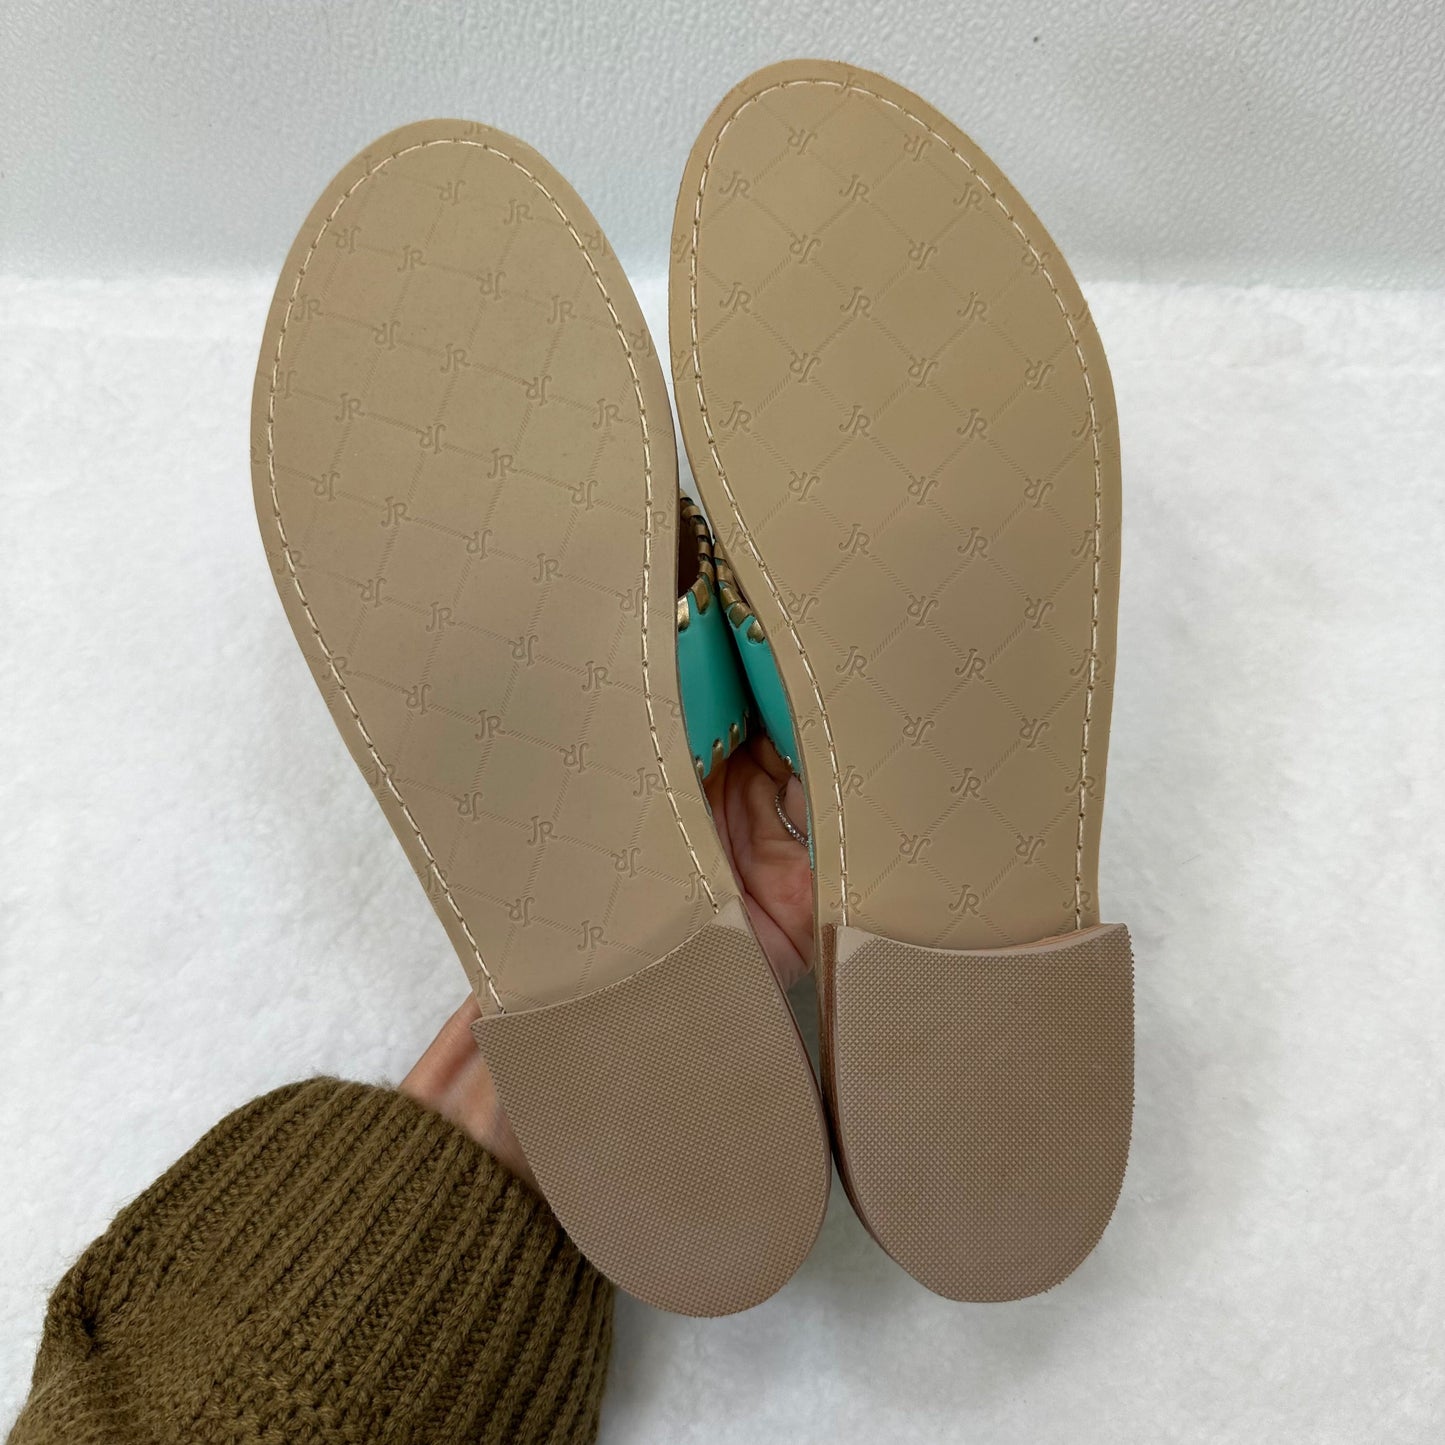 Mint Sandals Flip Flops Jack Rogers, Size 11